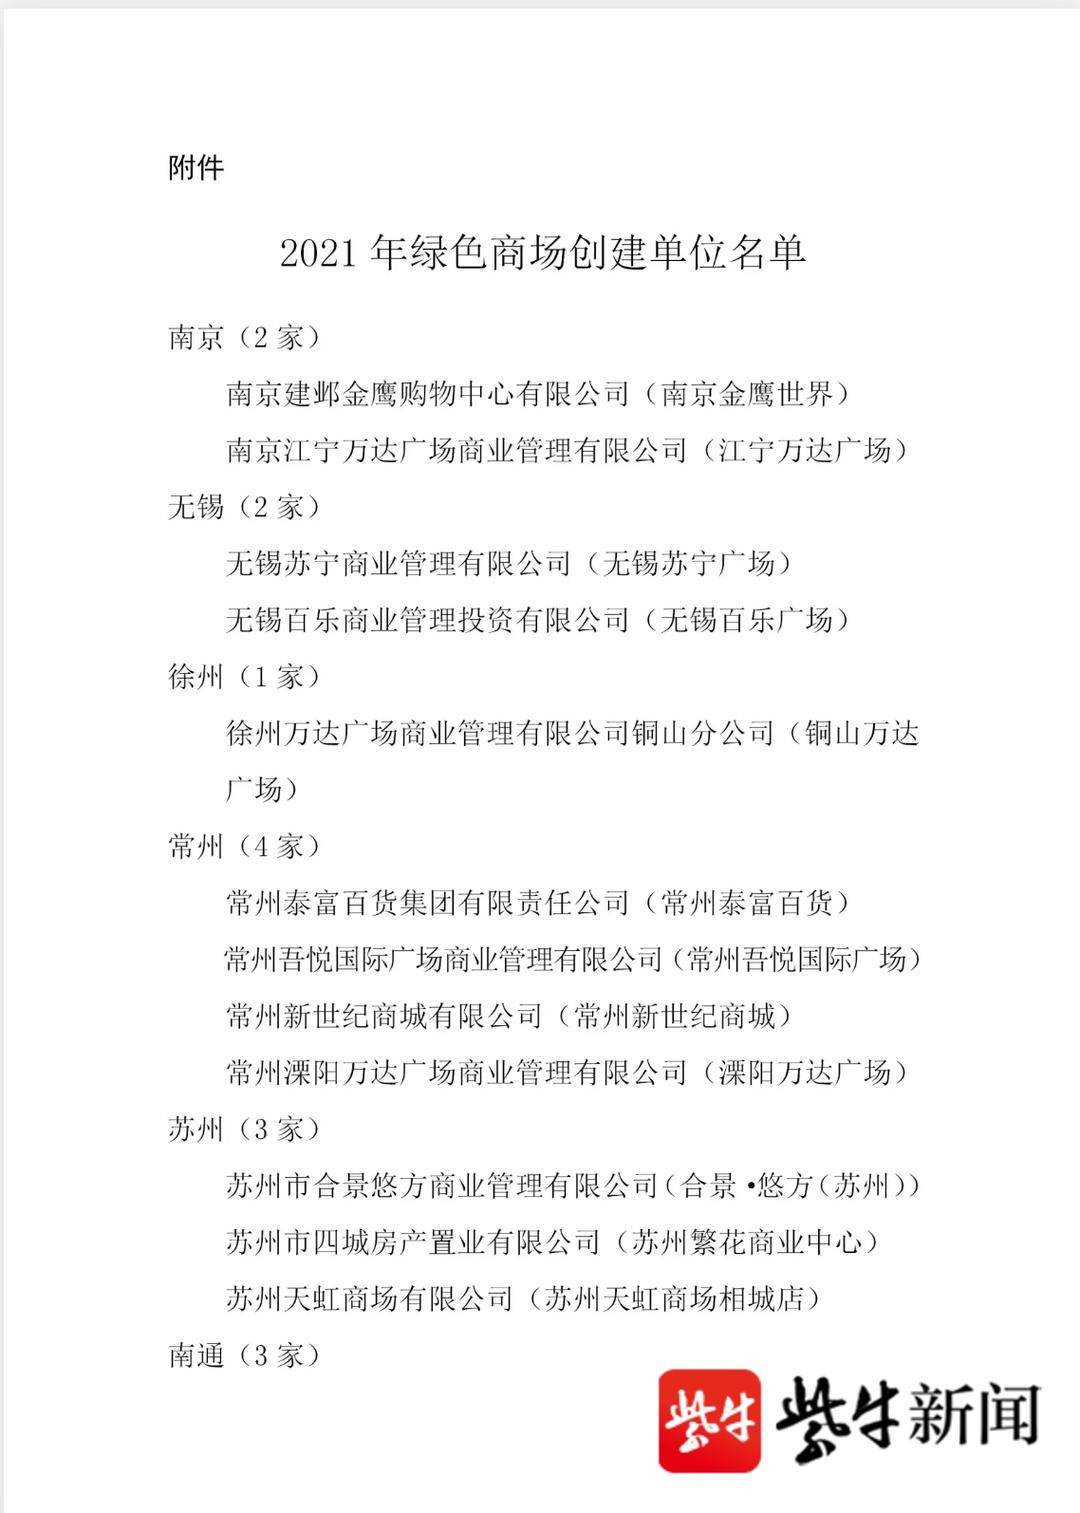 江苏省商务厅发布绿色商场名单 金鹰等23家入选(江苏省商务厅)